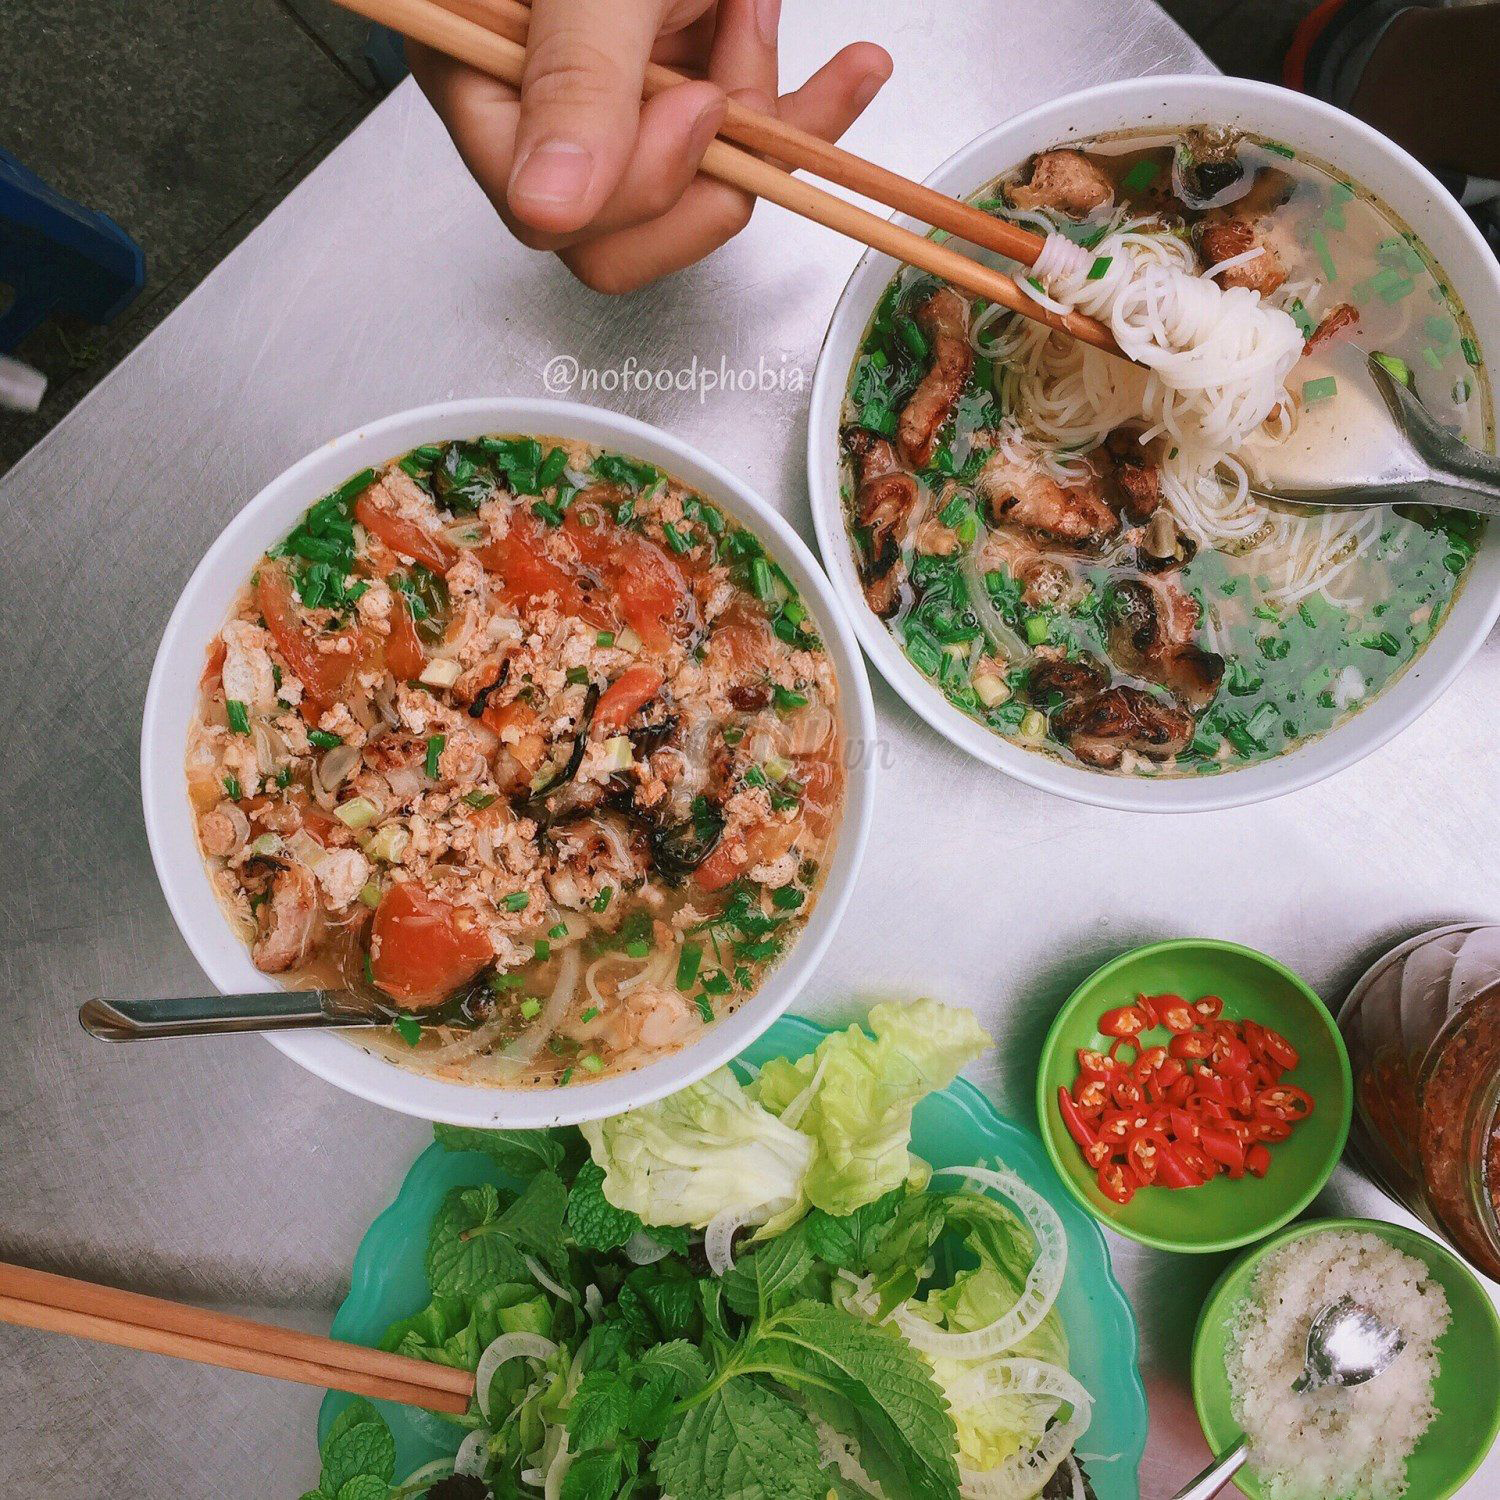 Bún riêu ở Phùng Hưng sẽ được kết hợp cùng thịt nướng thay vì đậu, giò quen thuộc.